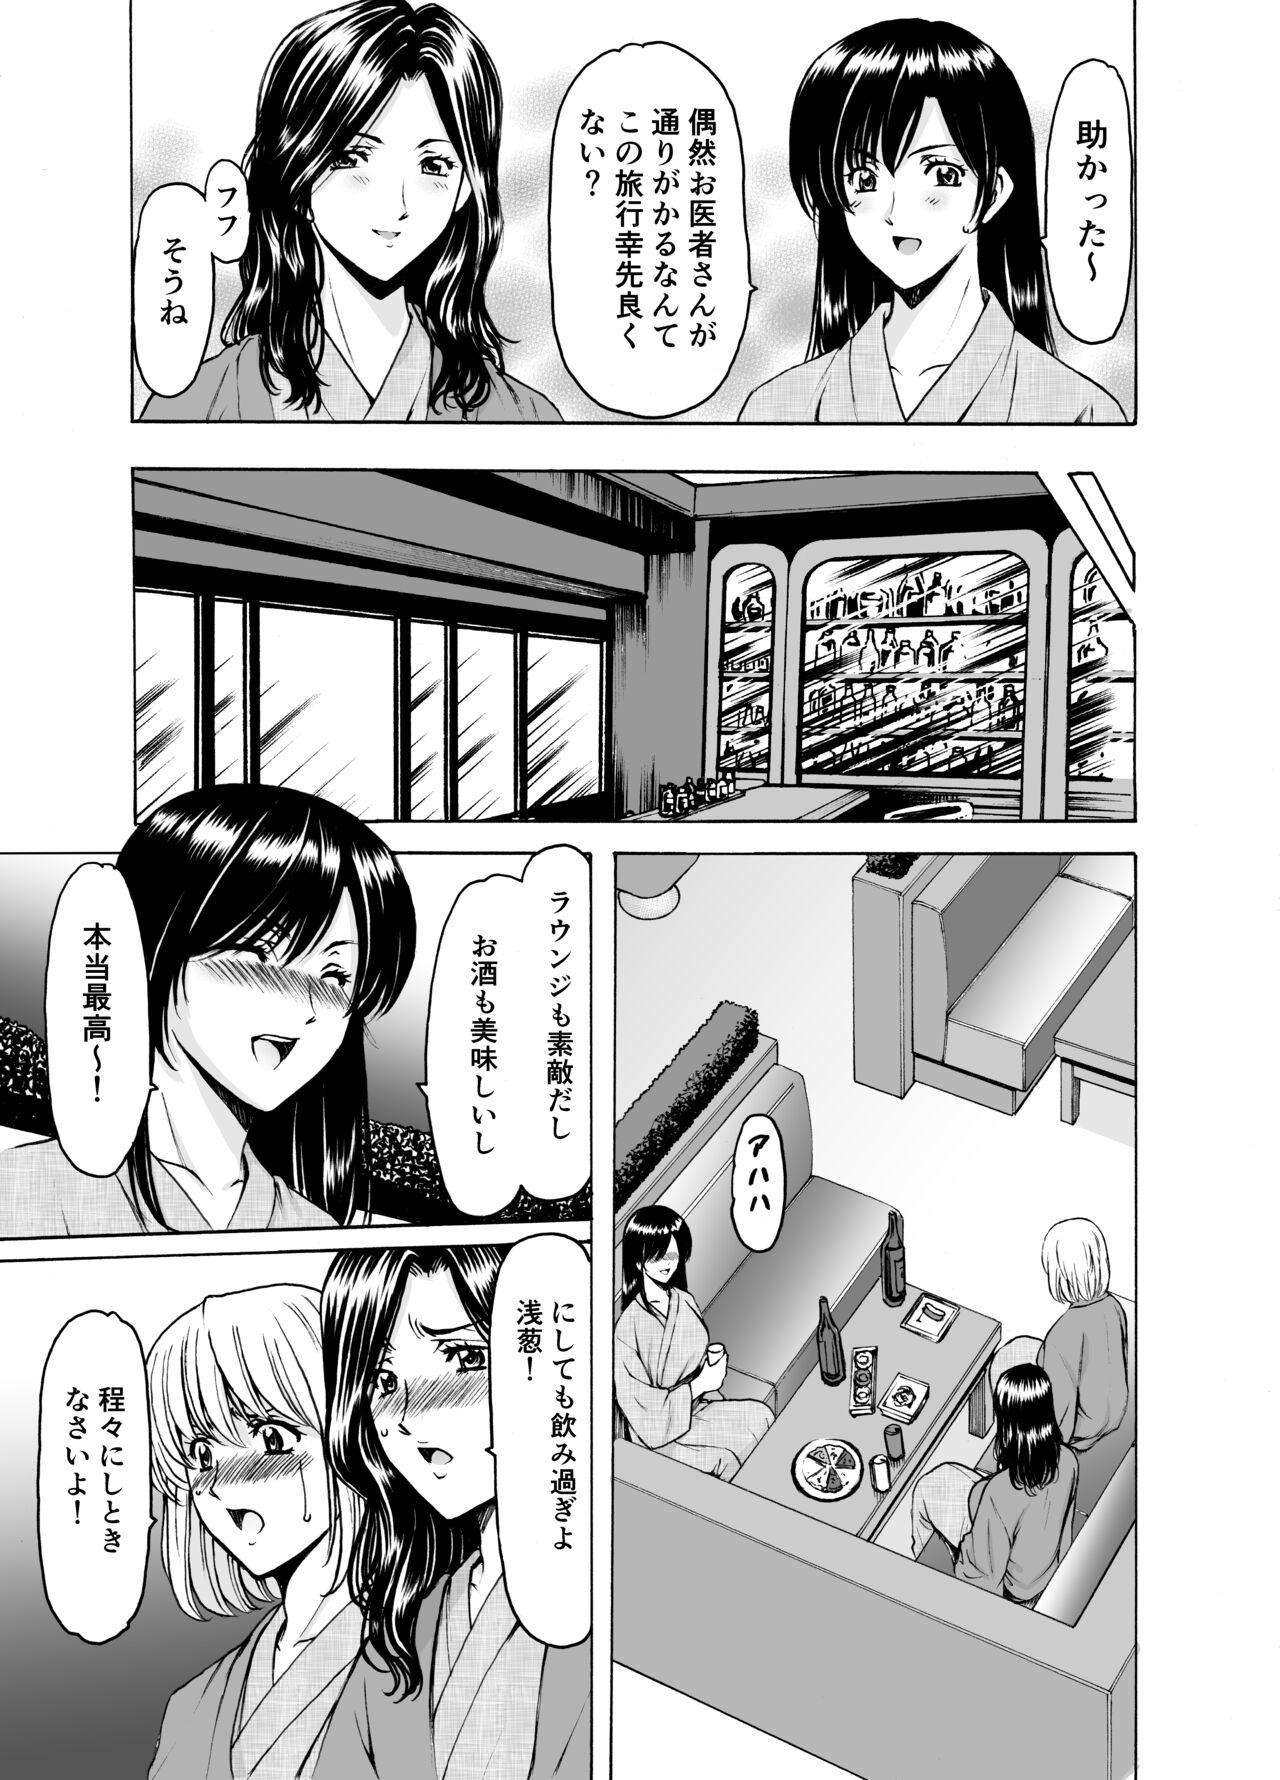 Boob Hitozuma × 3 Yukemuri Ryou Jou 1 - Original Deutsch - Page 9